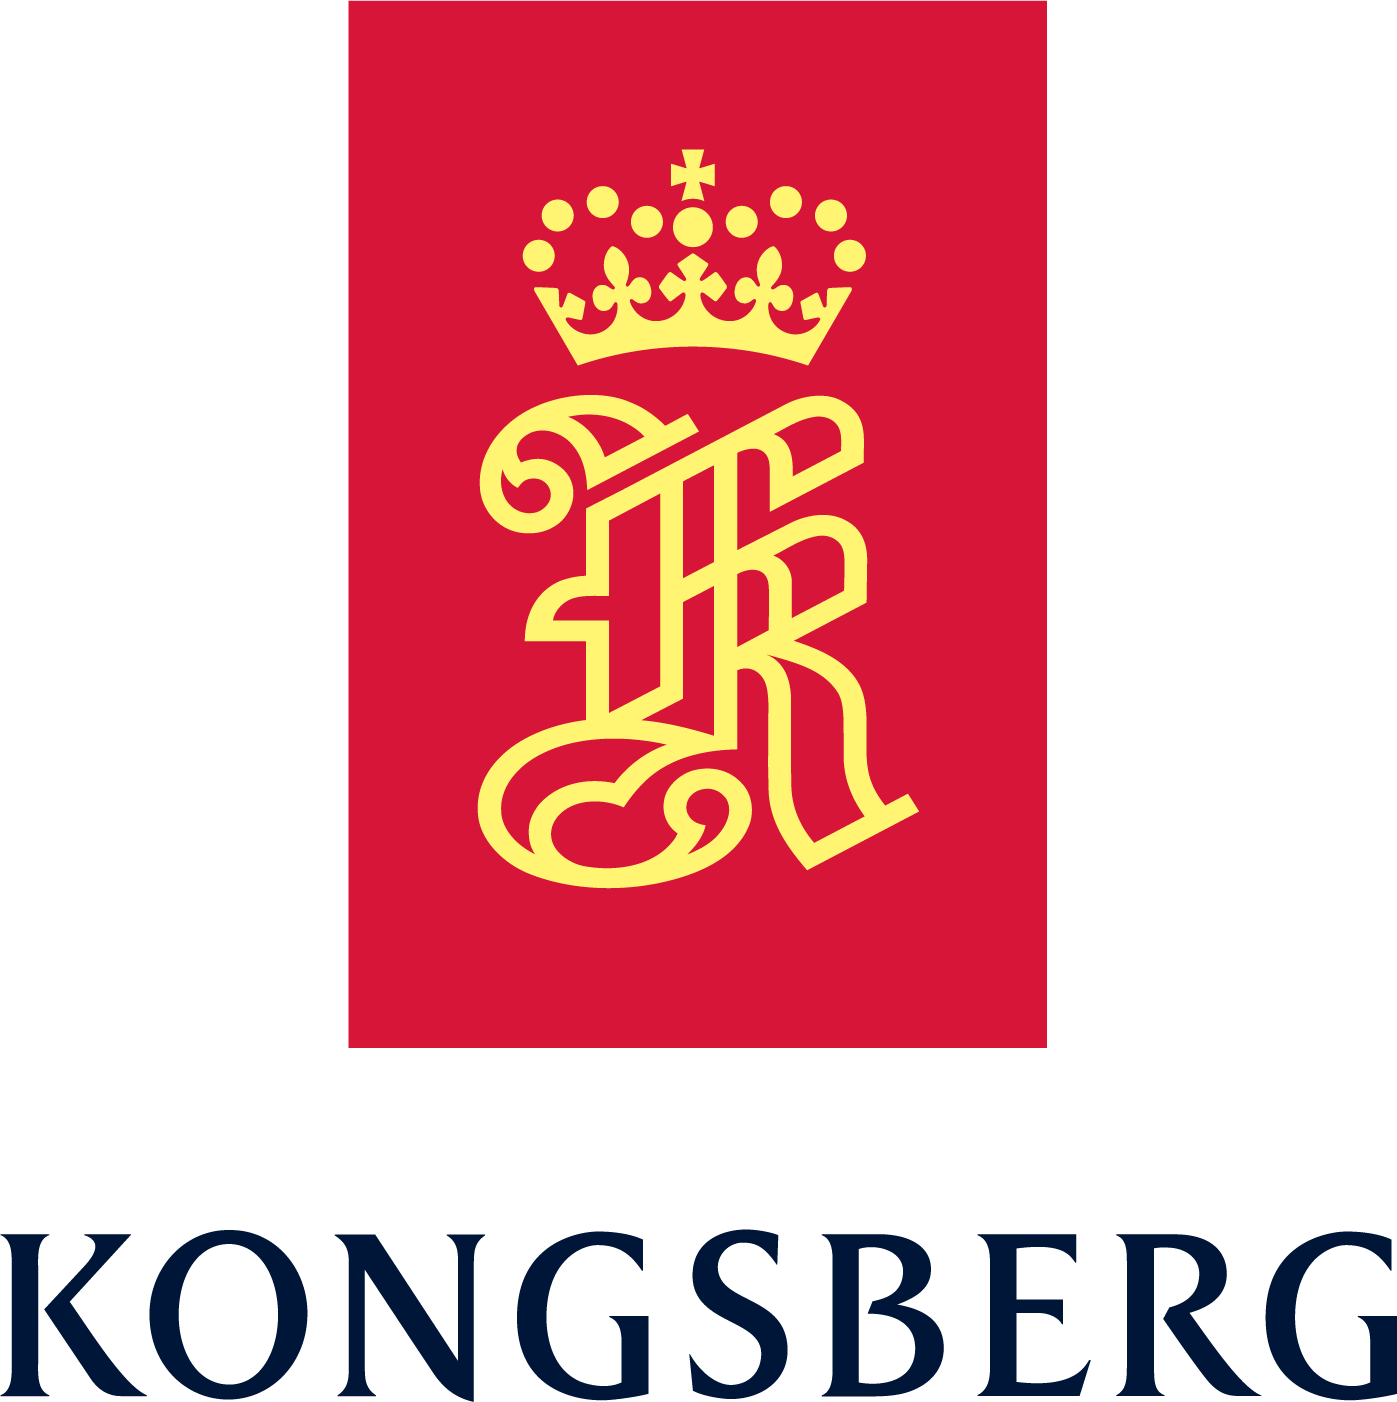 Kongsberg Defence & Aerospace